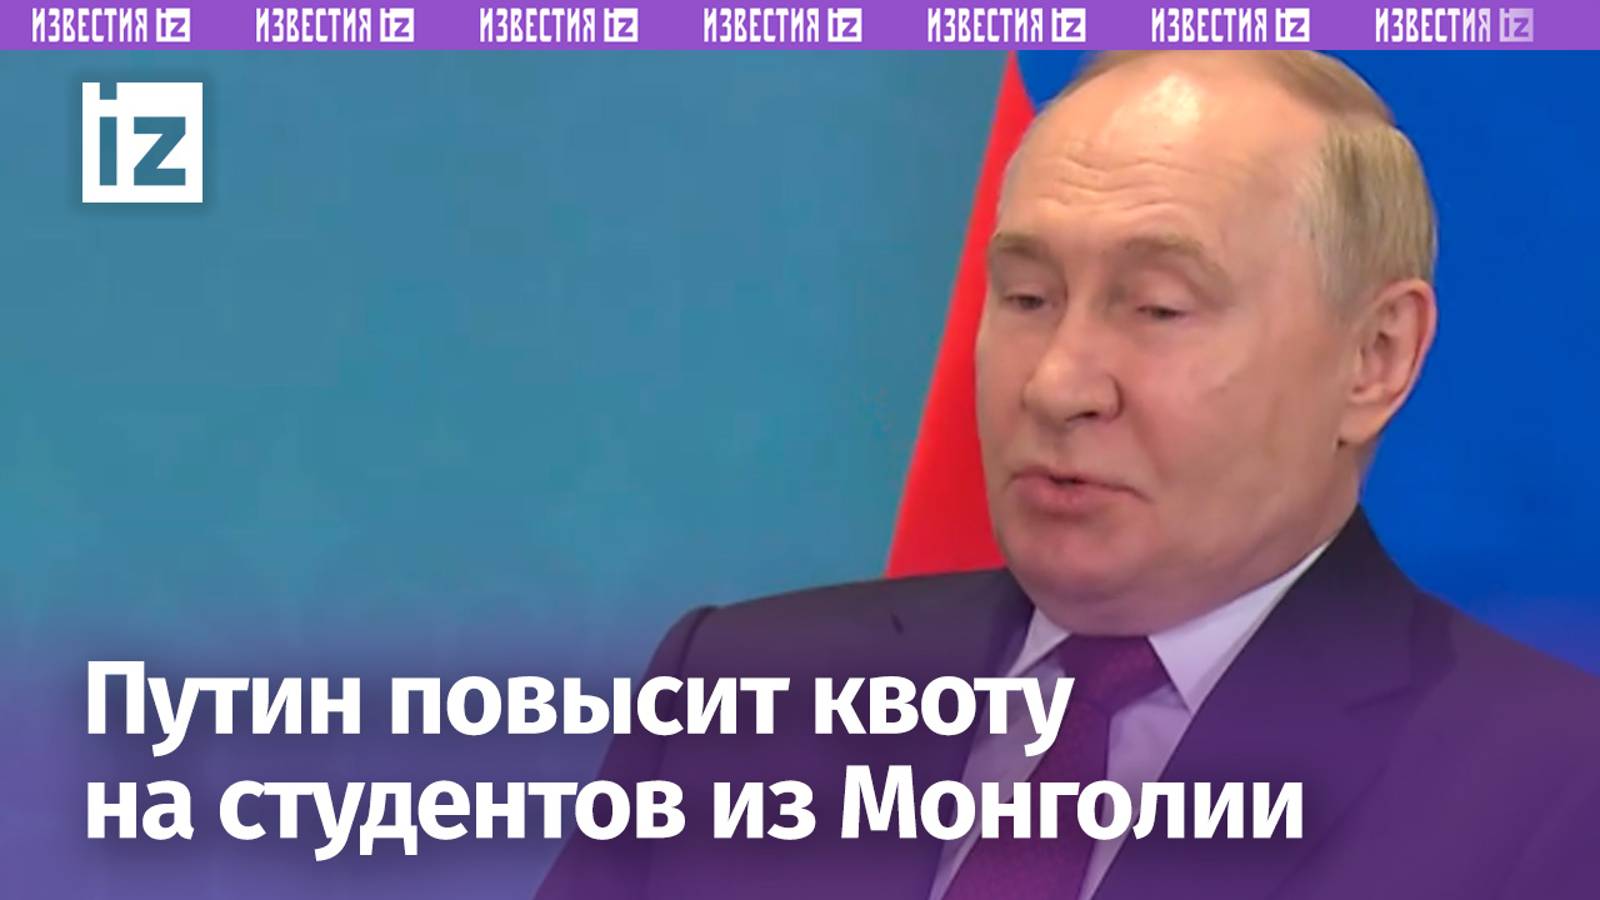 Россия готова увеличивать квоту на обучение студентов из Монголии — Владимир Путин на полях ШОС